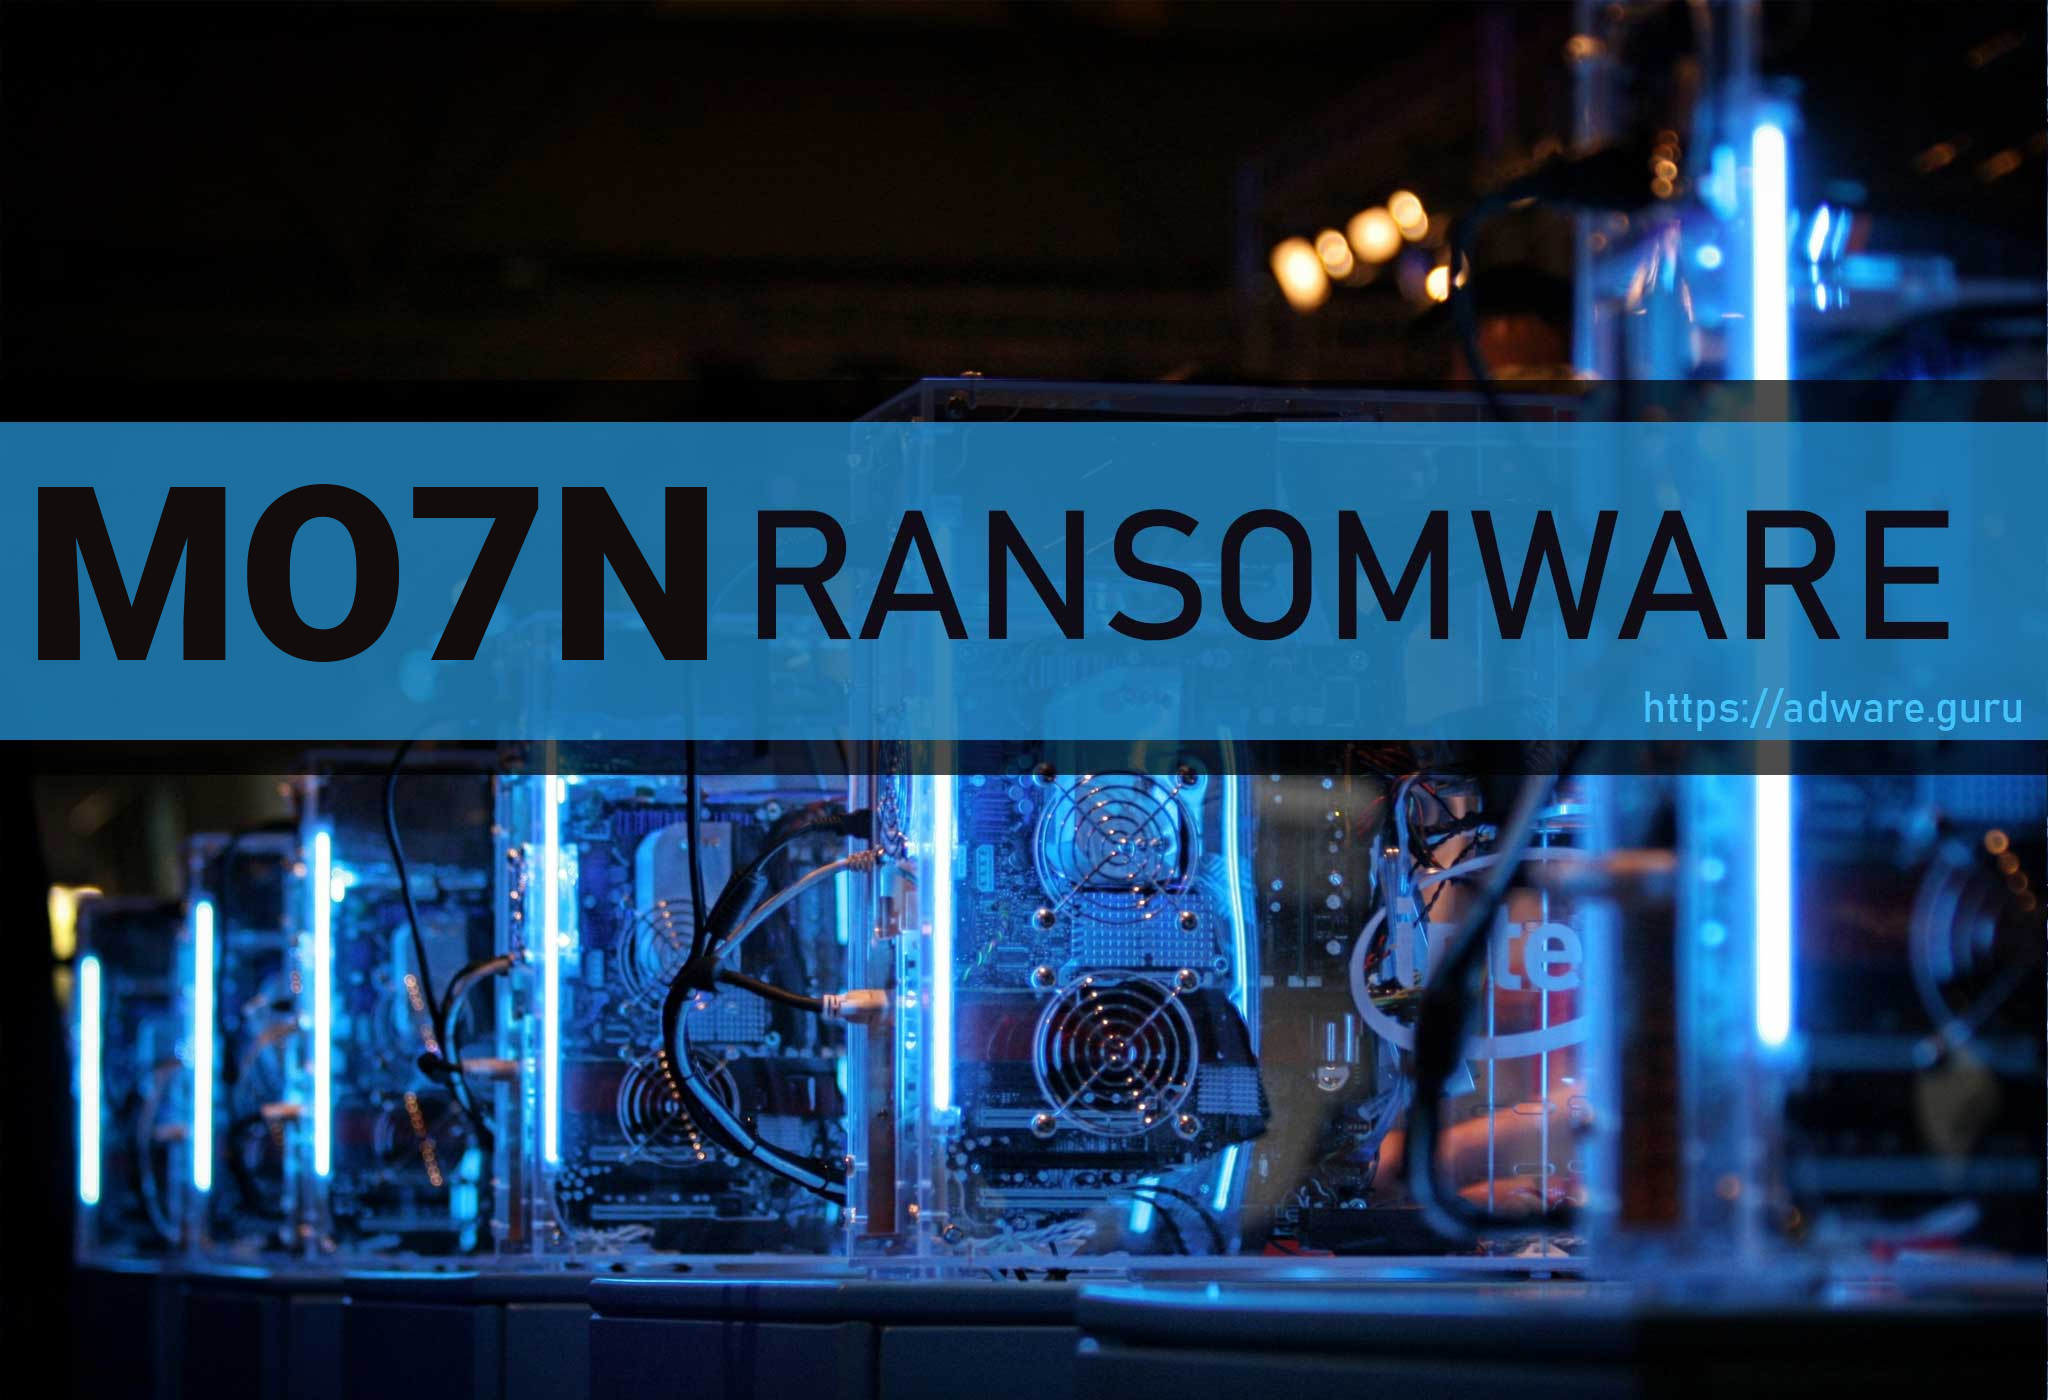 Eliminating mo7n Ransomware (Crypto-Malware/Ransomware)